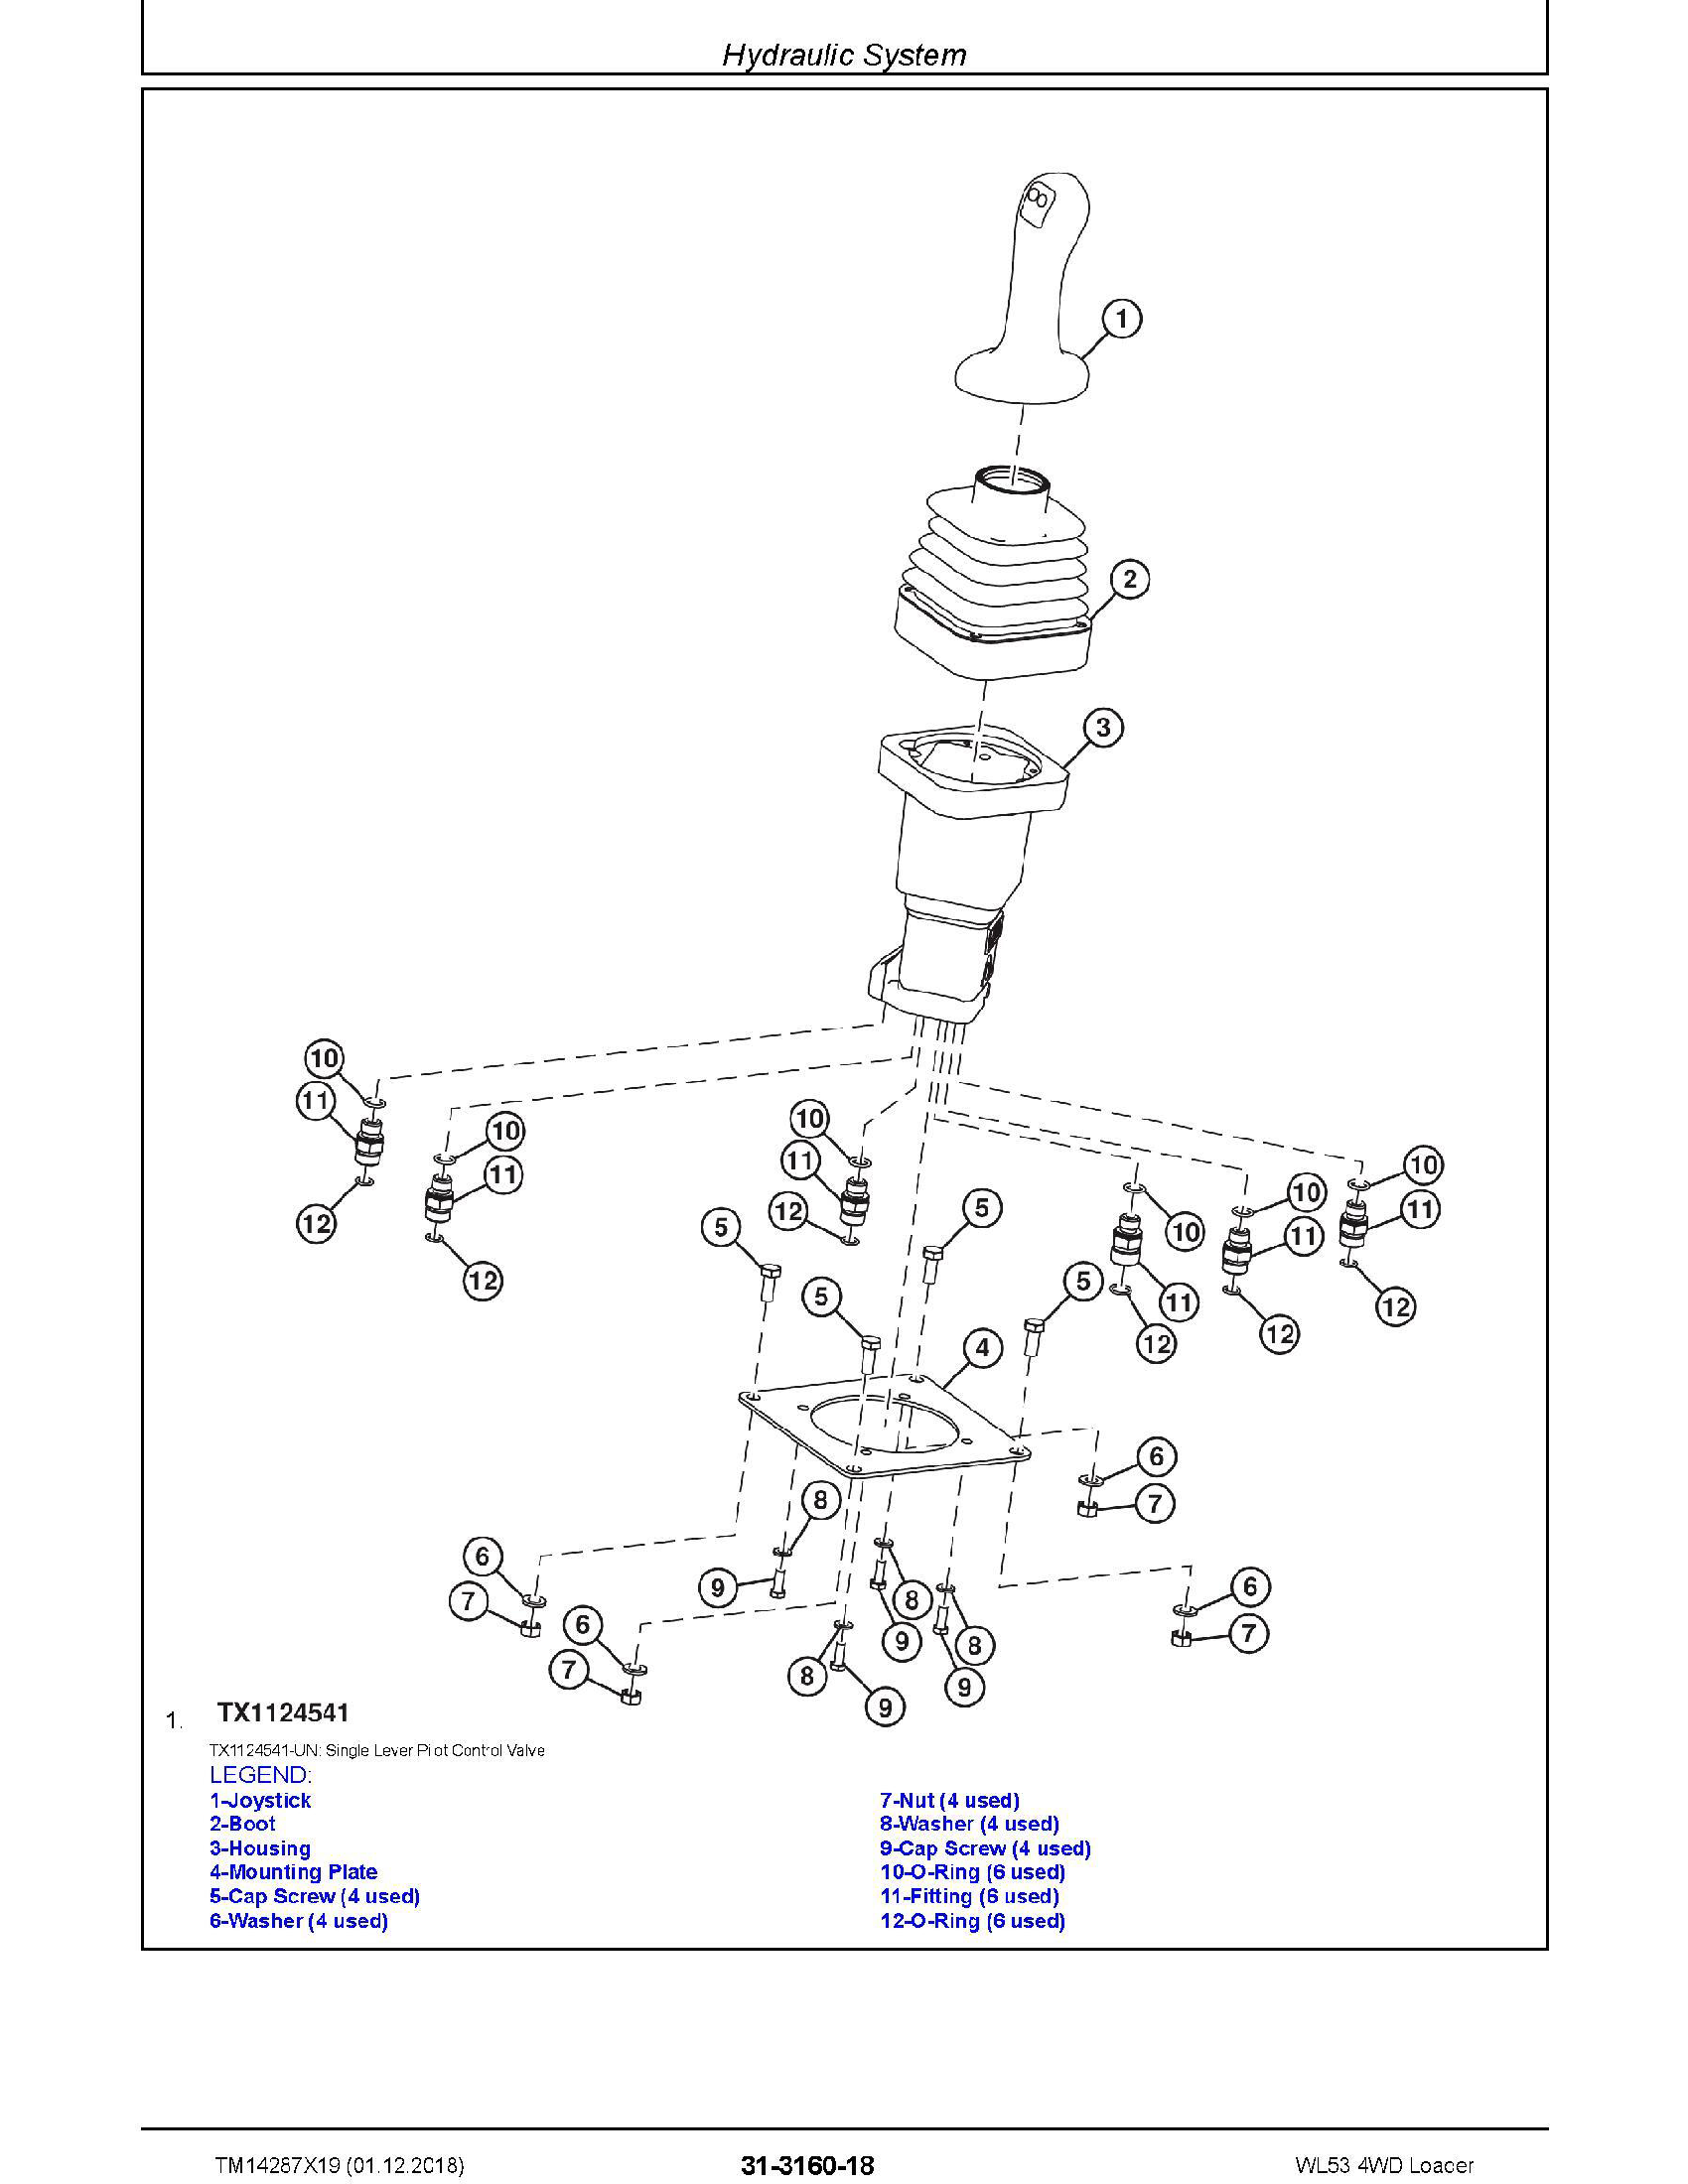 John Deere 7G18 manual pdf